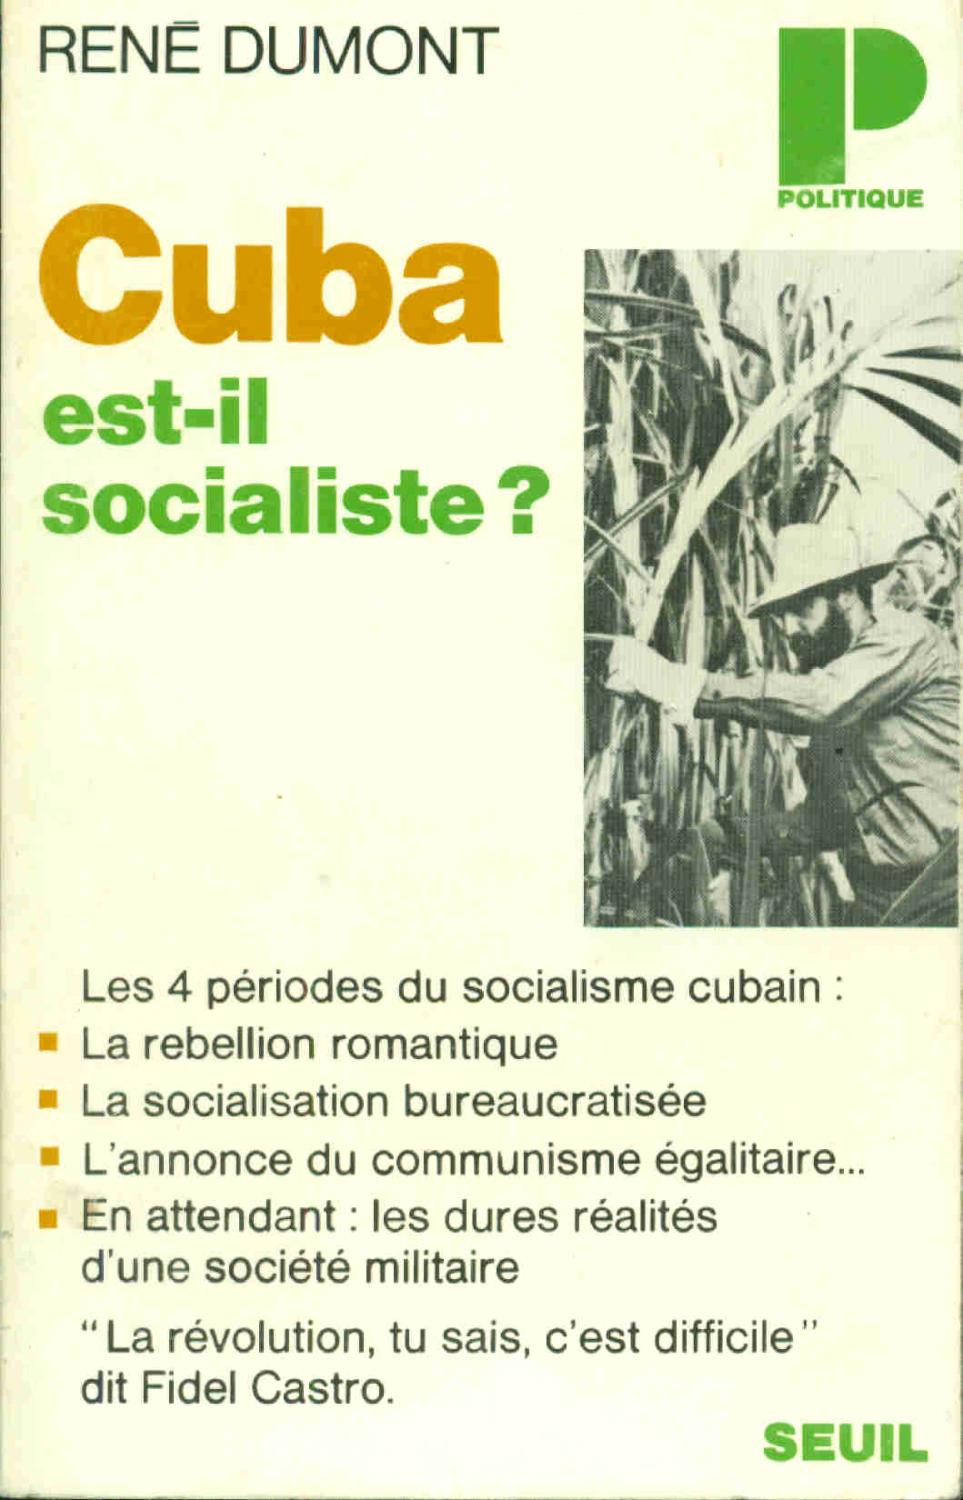 Cuba est-il socialiste de René Dumont: (1970) | dansmongarage